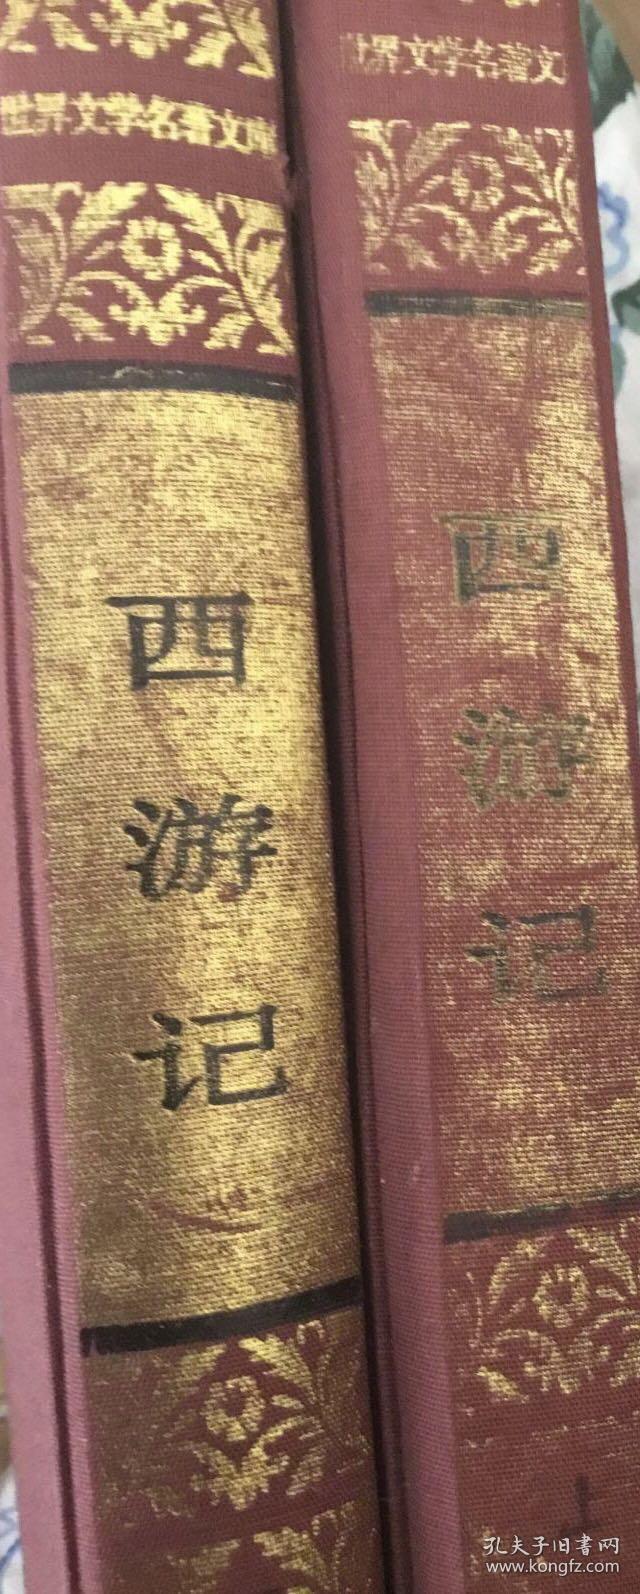 世界文学名著文库 西游记 没护封 人民文学出版社